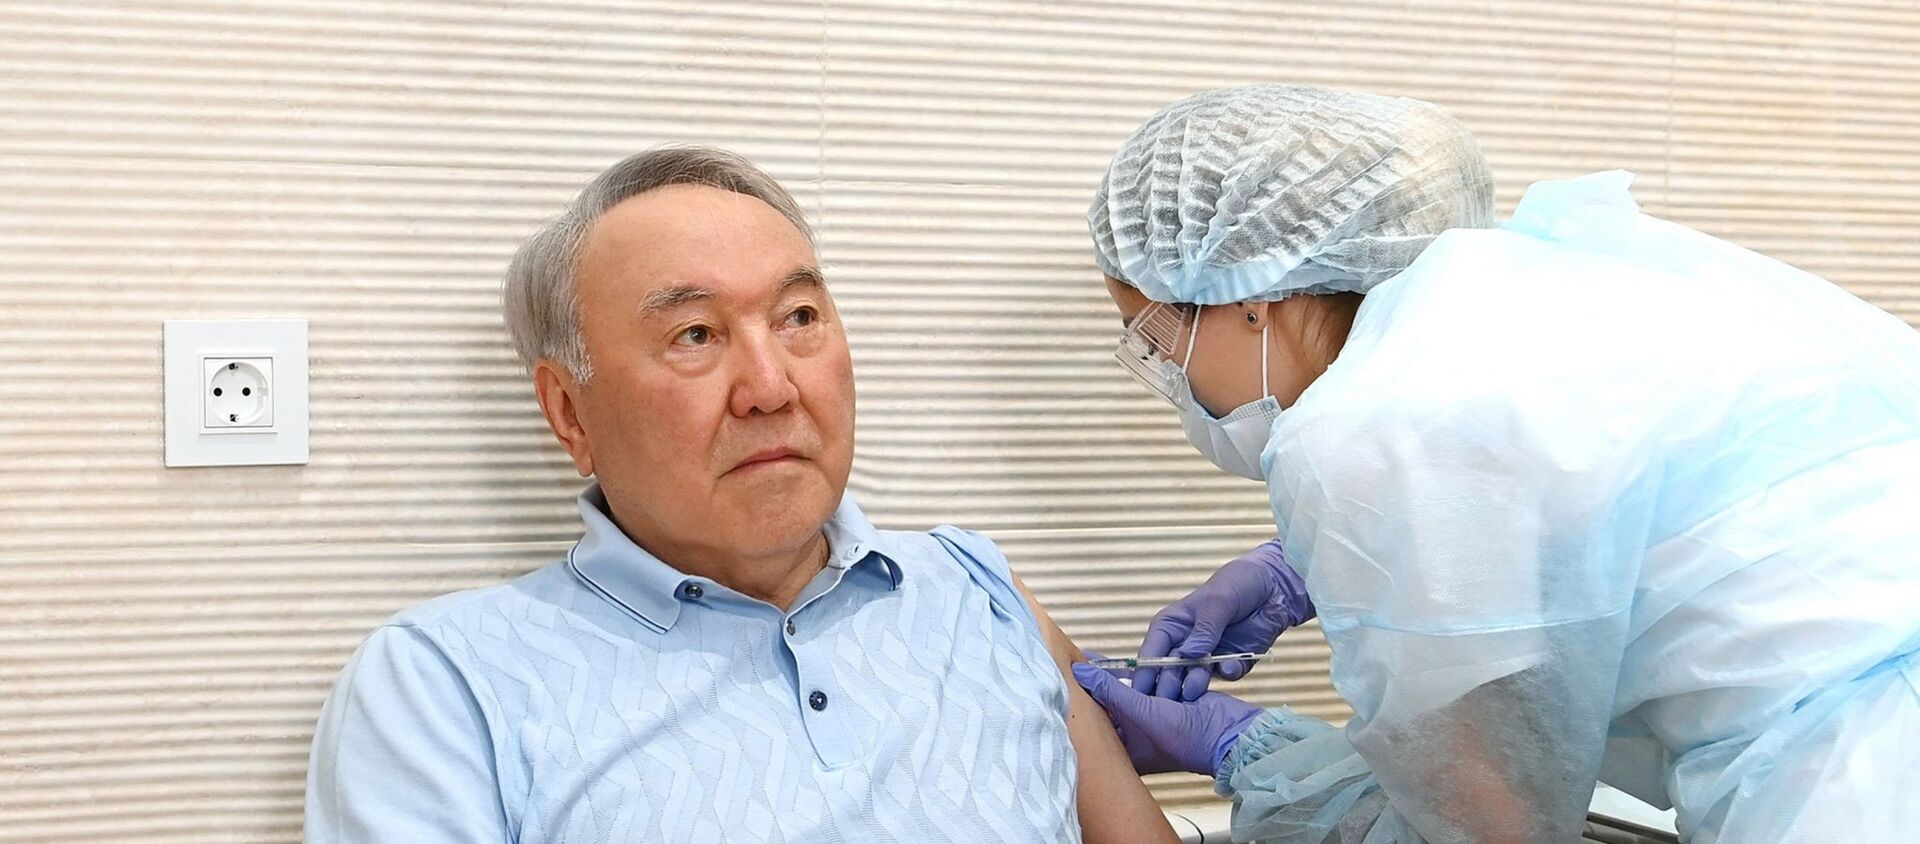 Первый президент Казахстана - Елбасы Назарбаев получил первый компонент вакцины Спутник V - Sputnik Қазақстан, 1920, 30.06.2021